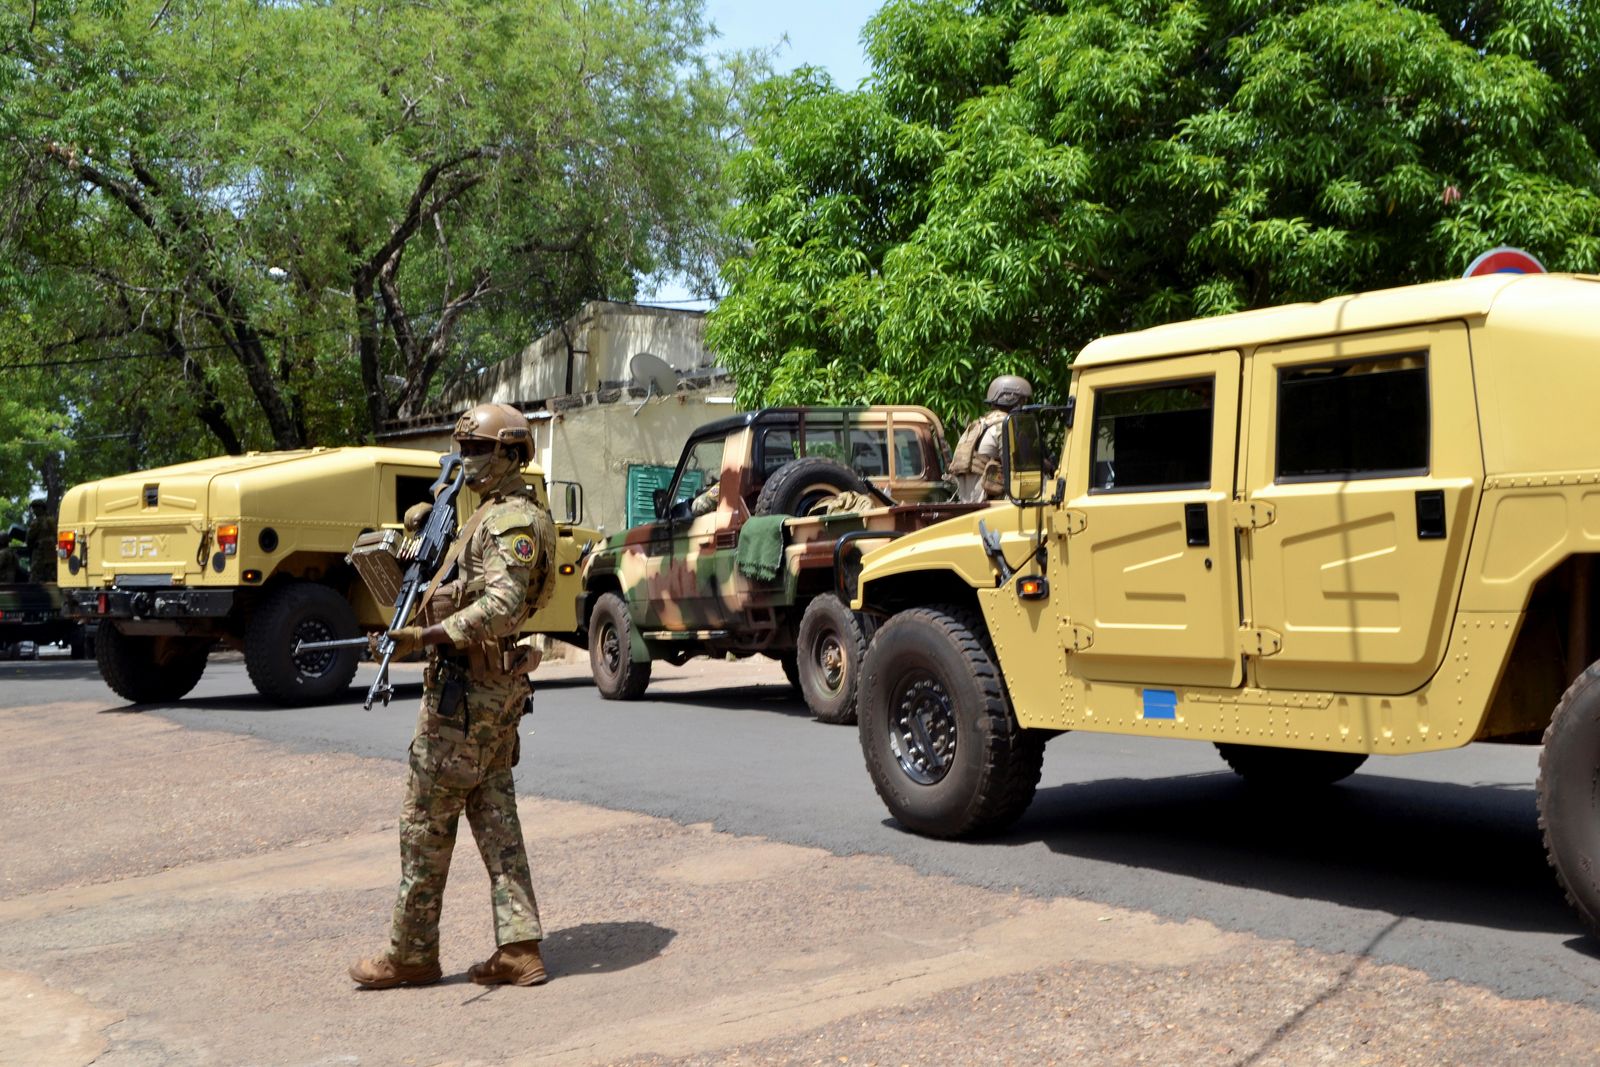 عناصر من الجيش خلال تأمين اجتماع وفد وسطاء الجماعة الاقتصادية لدول غرب إفريقيا (إيكواس) مع العقيد أسيمي غويتا بشأن أزمة مالي، في باماكو، مالي، 26 مايو 2021 - REUTERS